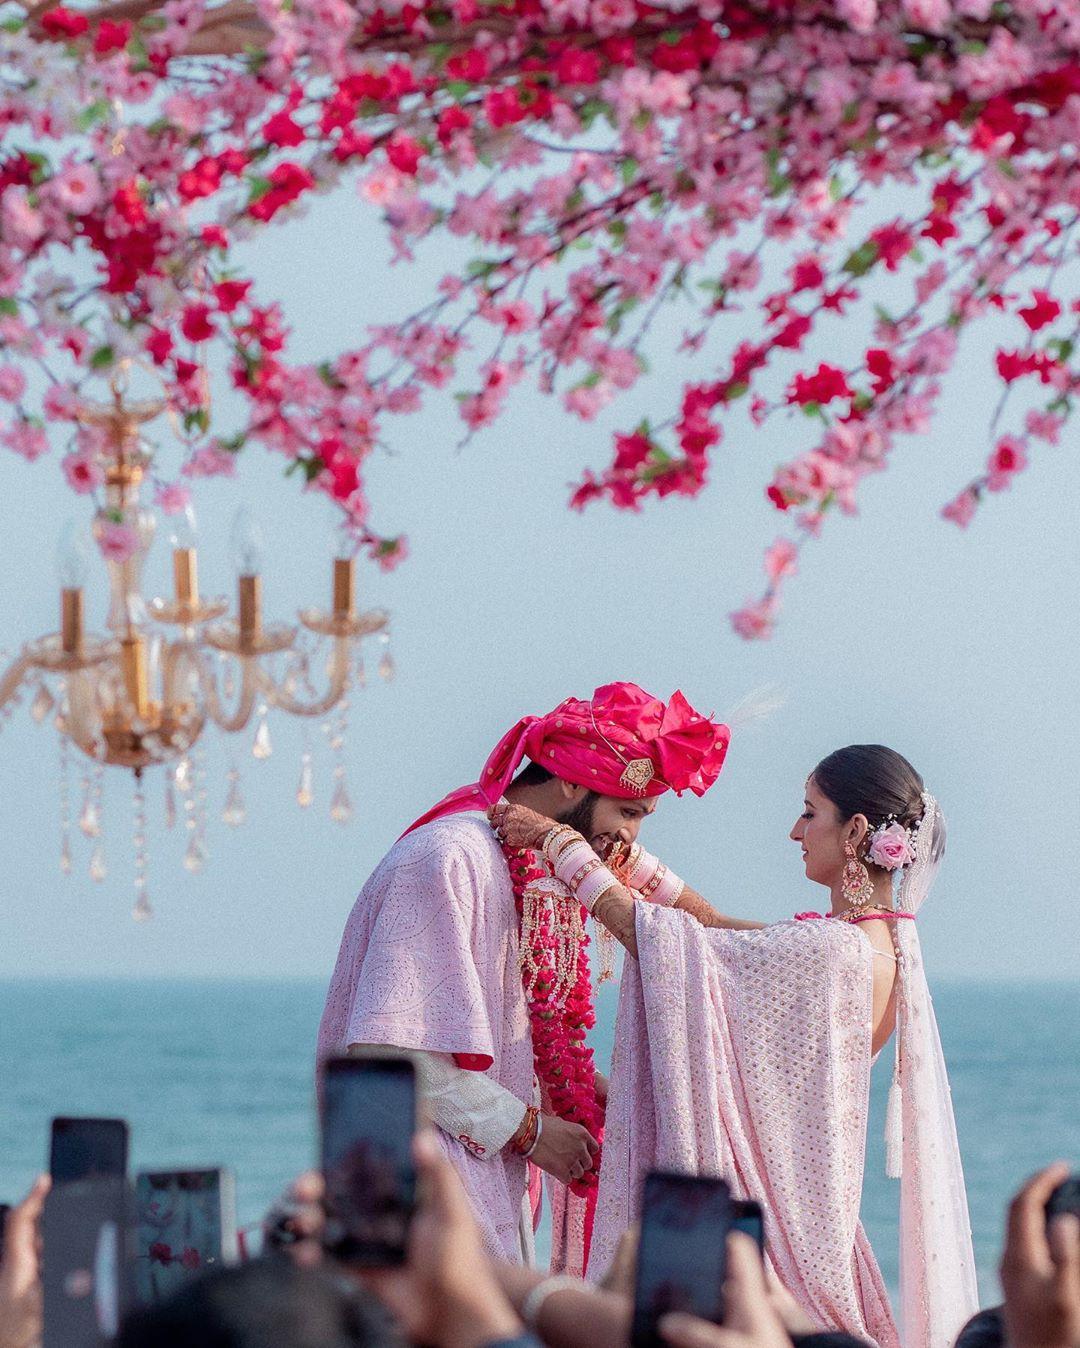 Happy Flashbacks Wedding Photographer, Mumbai